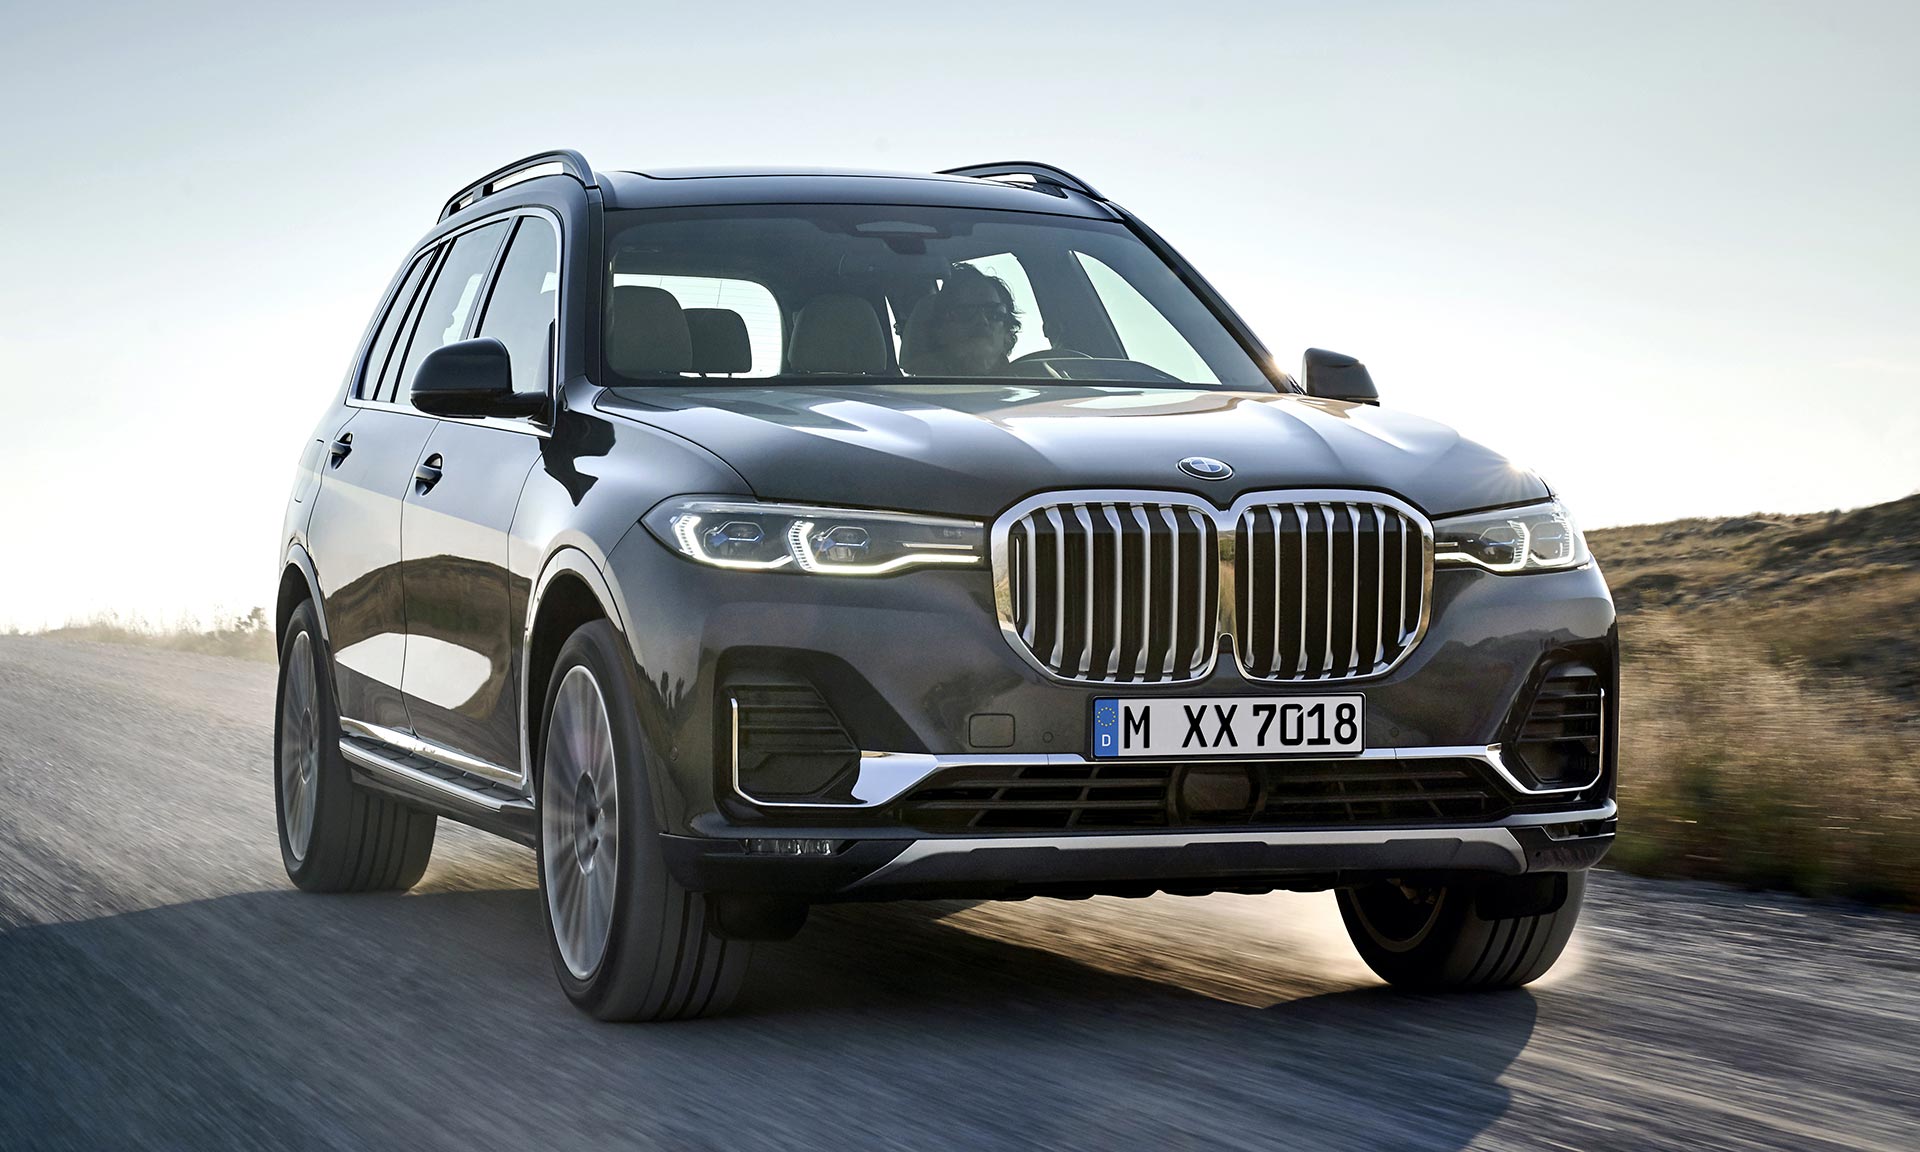 BMW ukázalo své největší a nejluxusnější SUV s novým označením X7